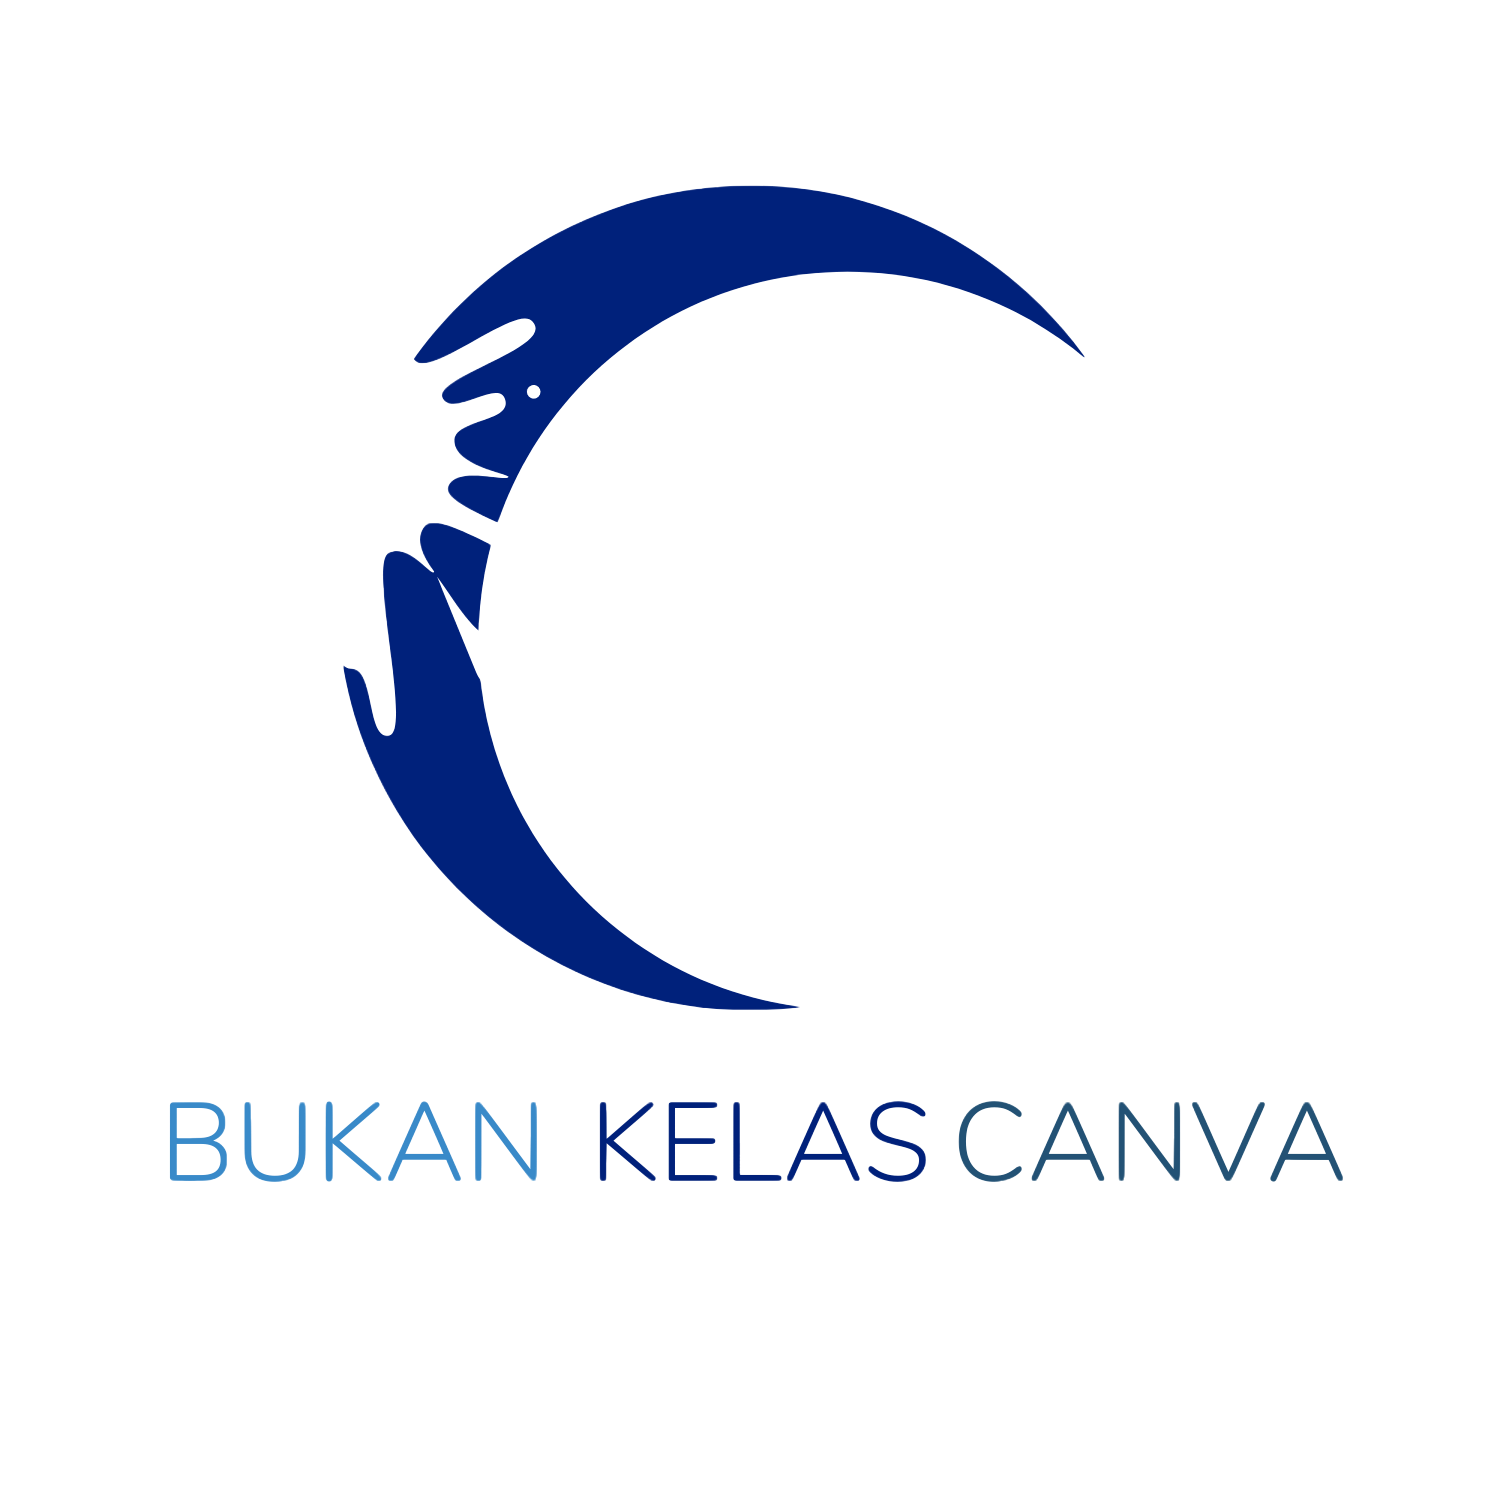 BUKAN KELAS CANVA logo